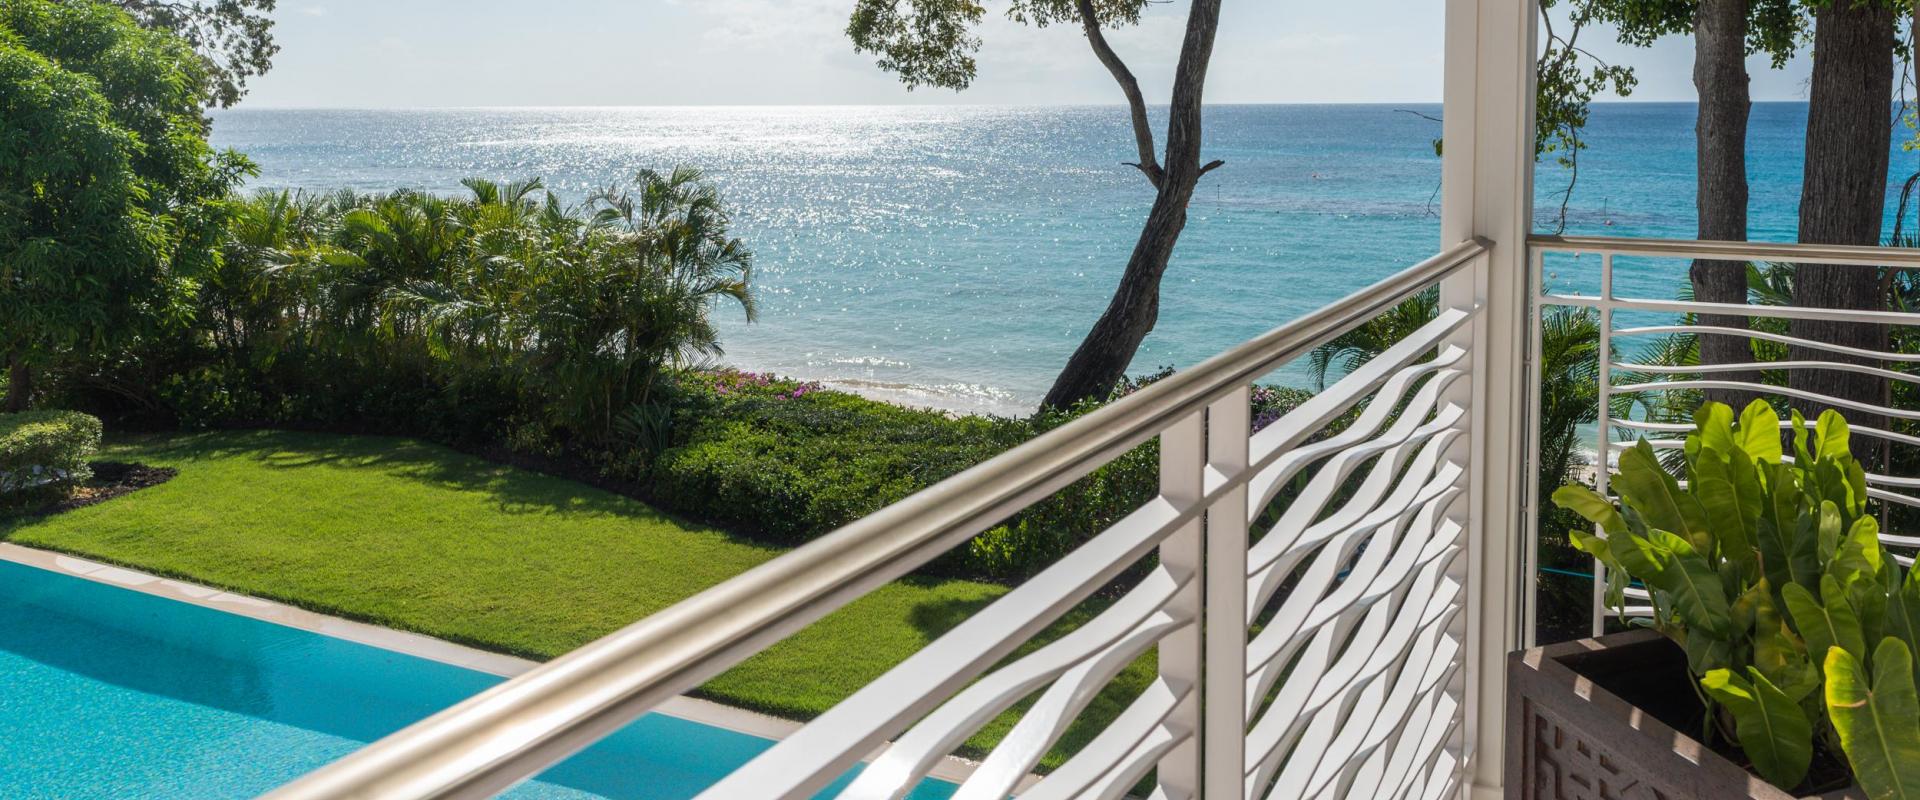 Villa Tamarindo House/Villa For Rent in Barbados